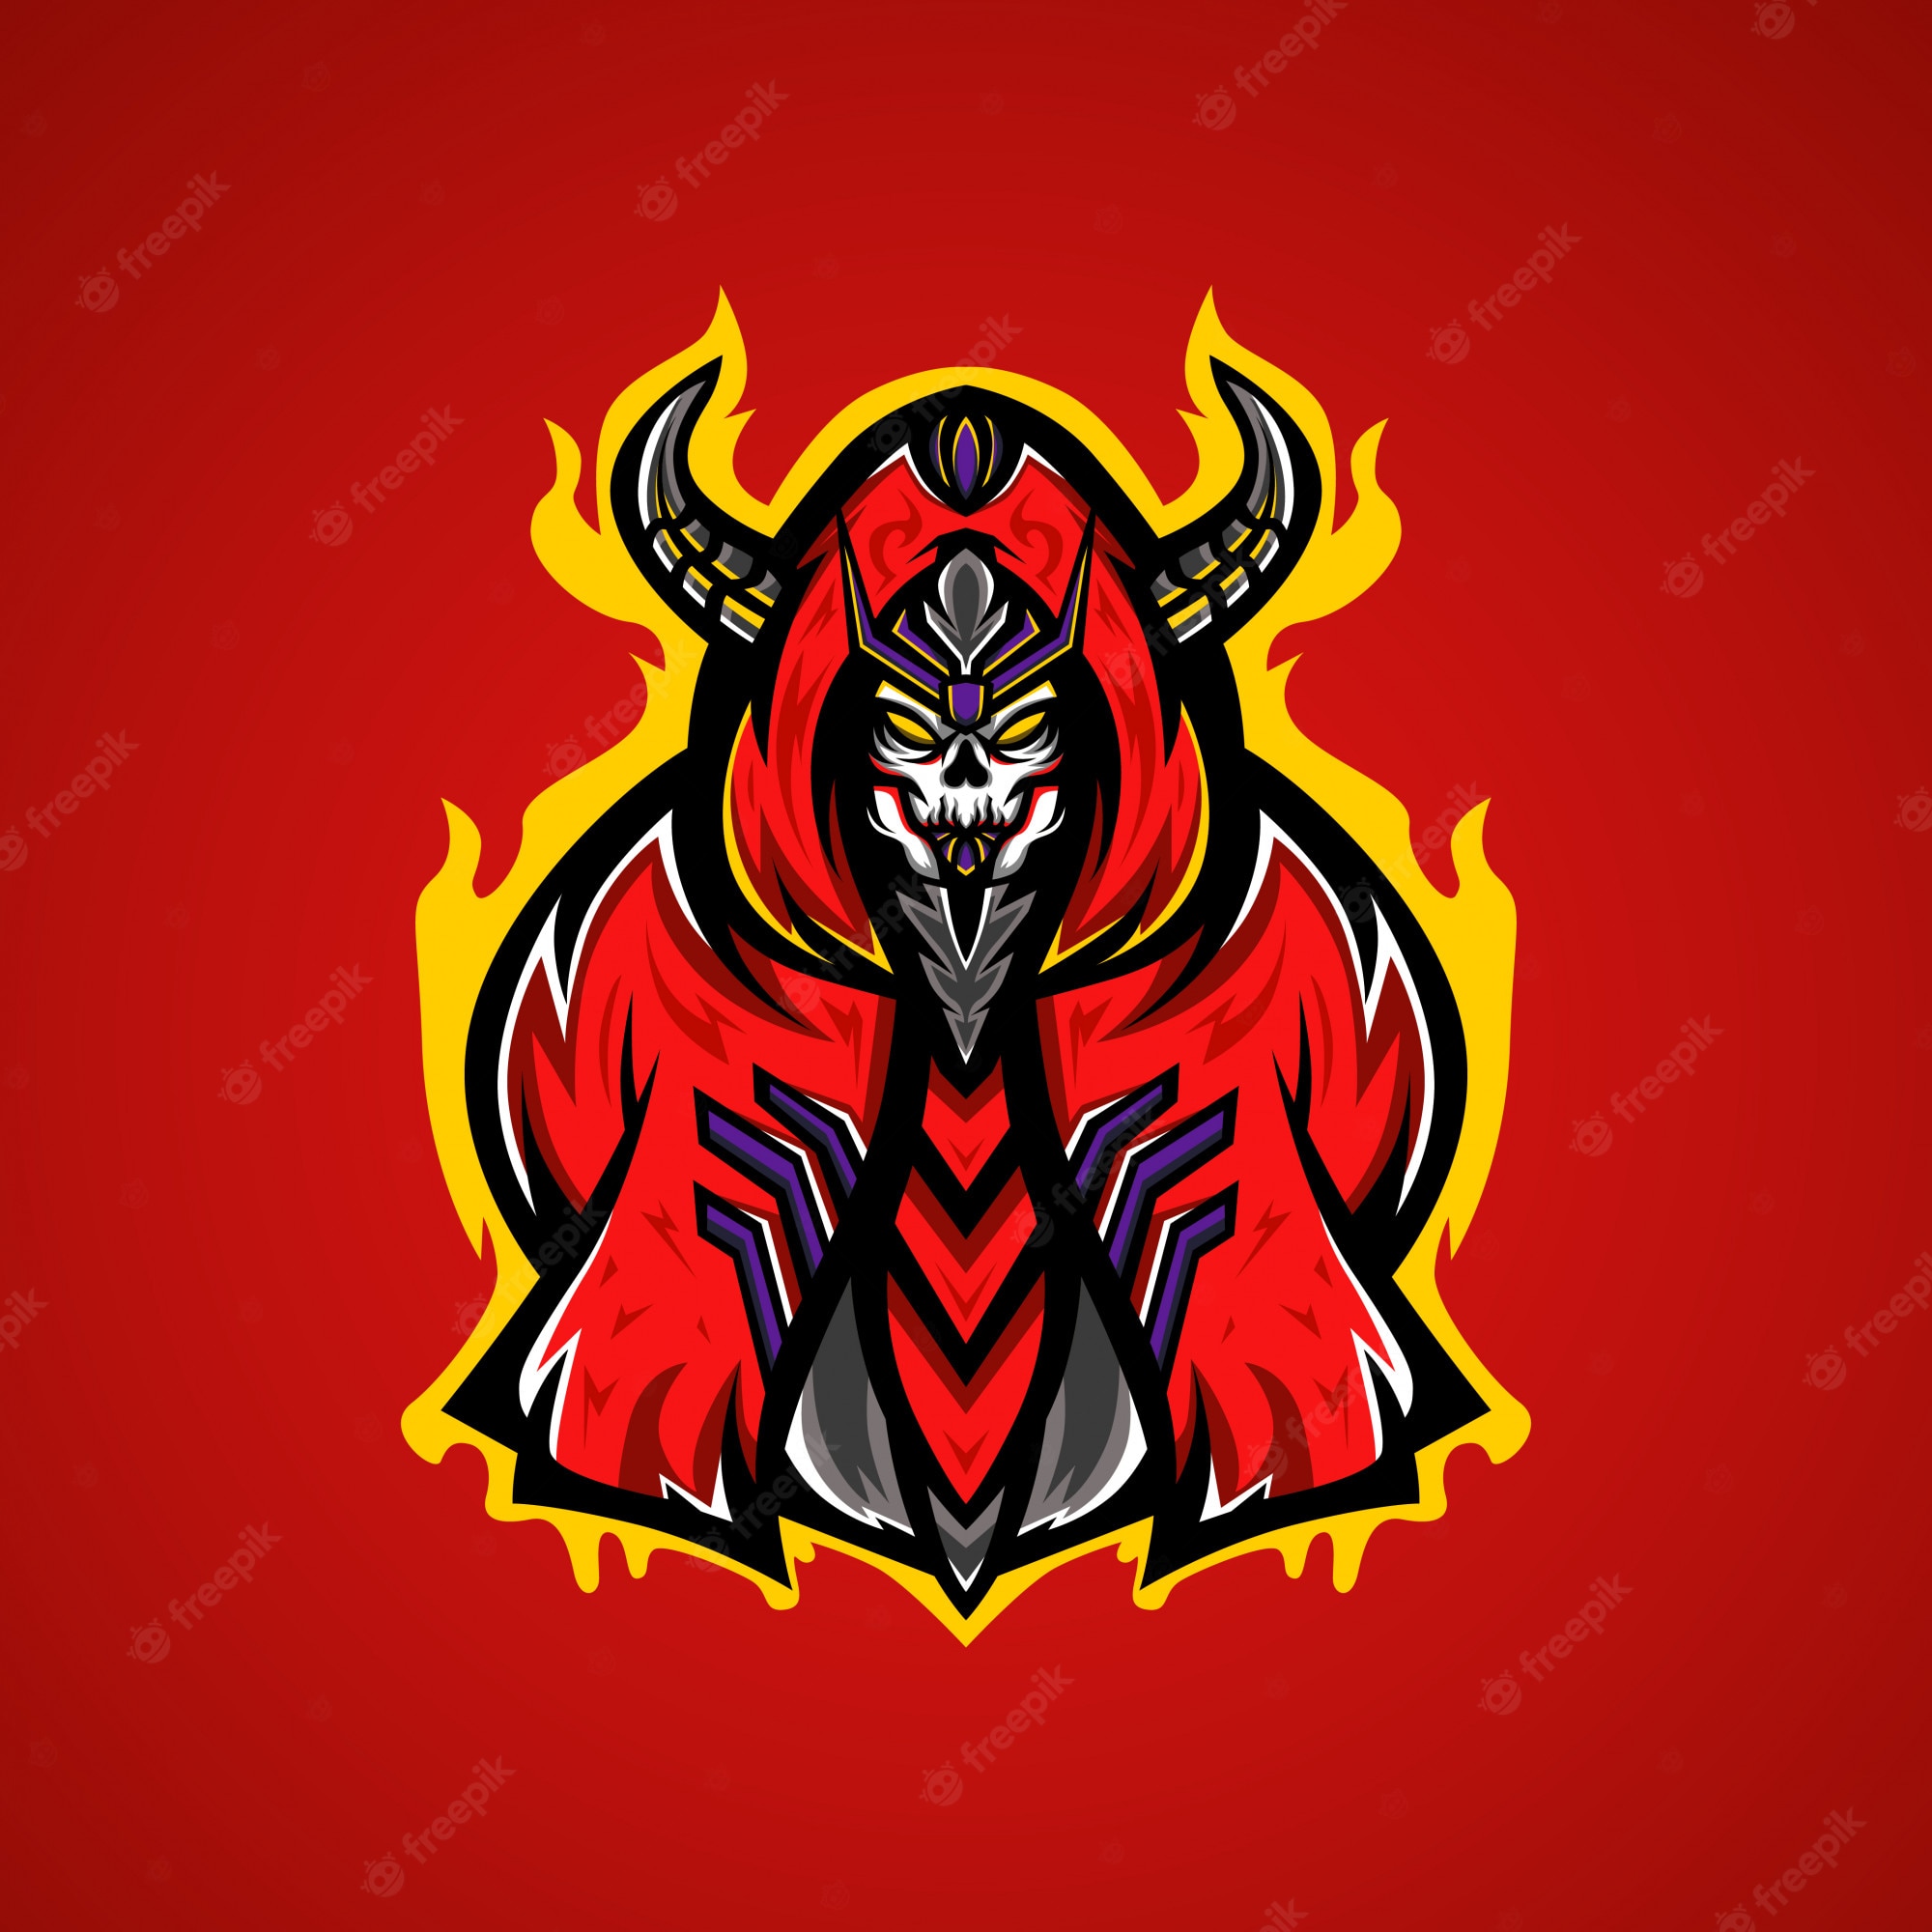 monster-skull-gaming-logo-esport_221276-20